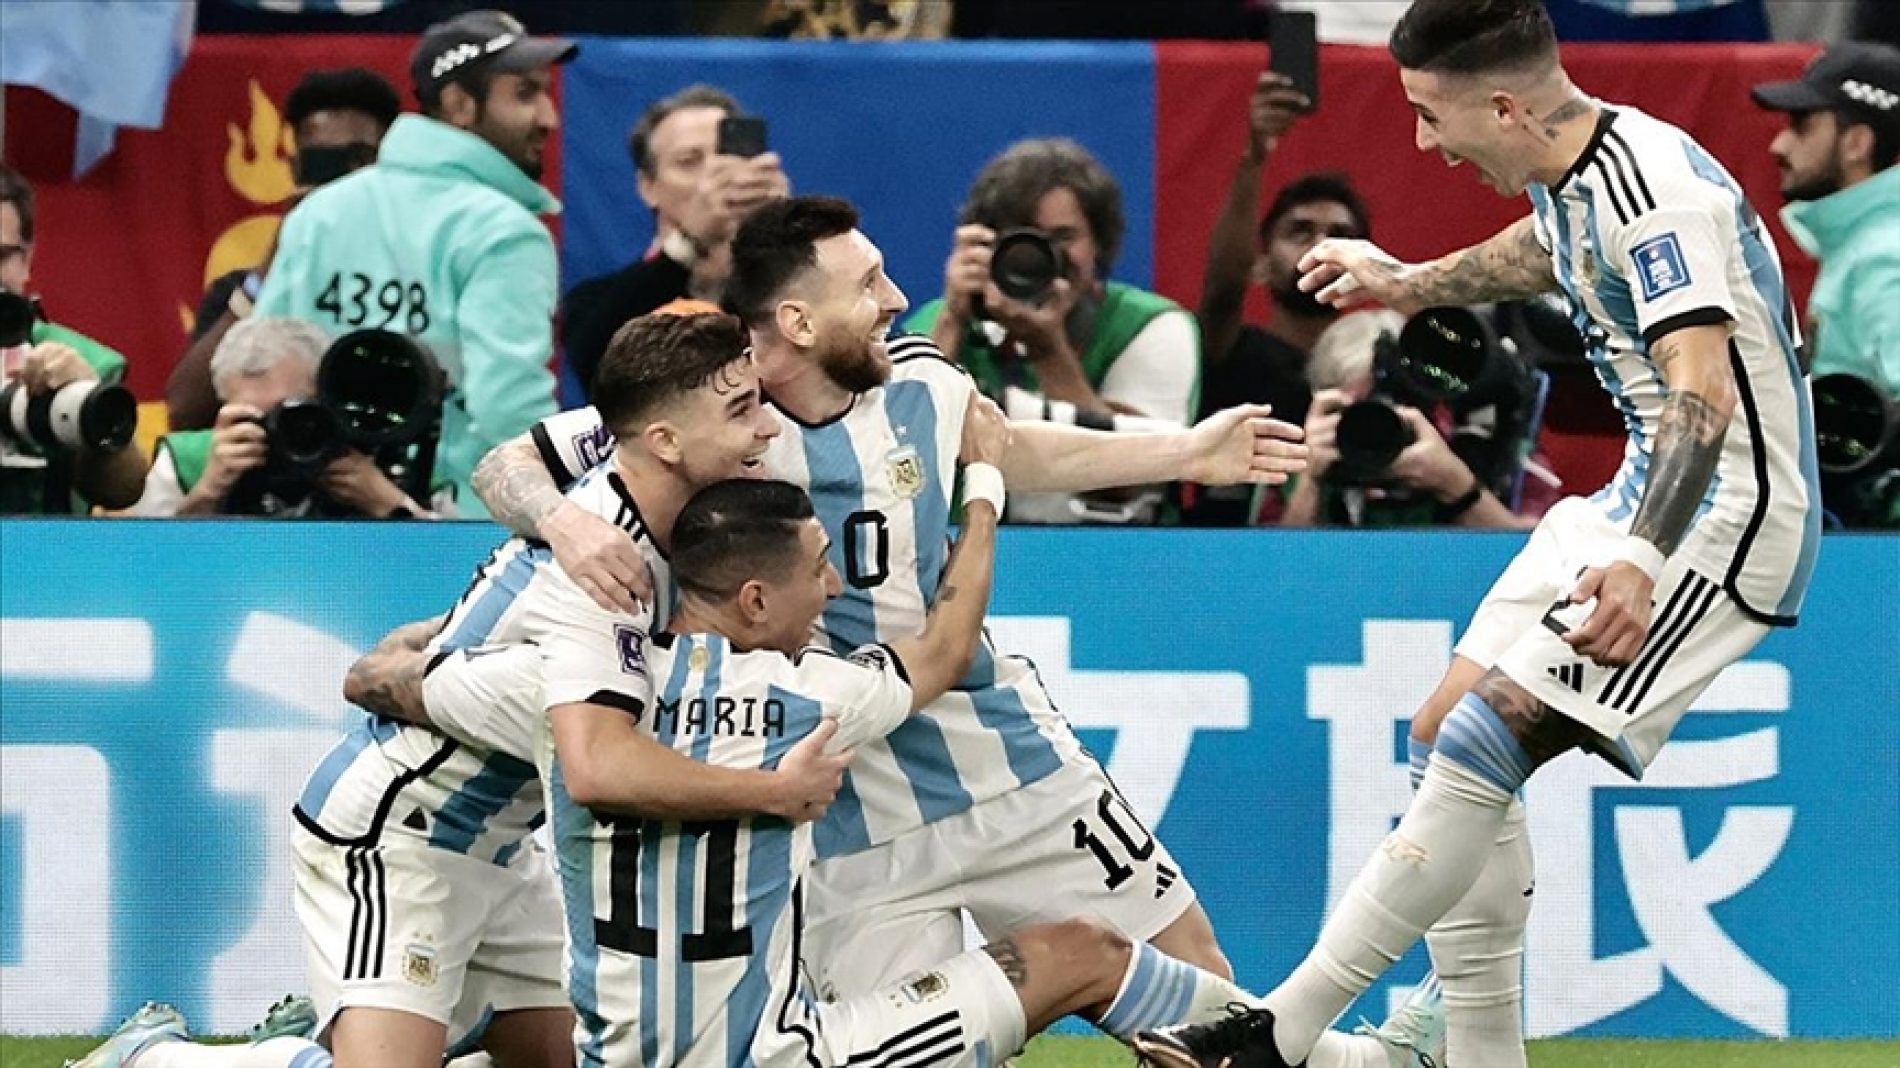 SP “Katar 2022”: Argentina nakon penala porazila Francusku i osvojila treći naslov prvaka svijeta